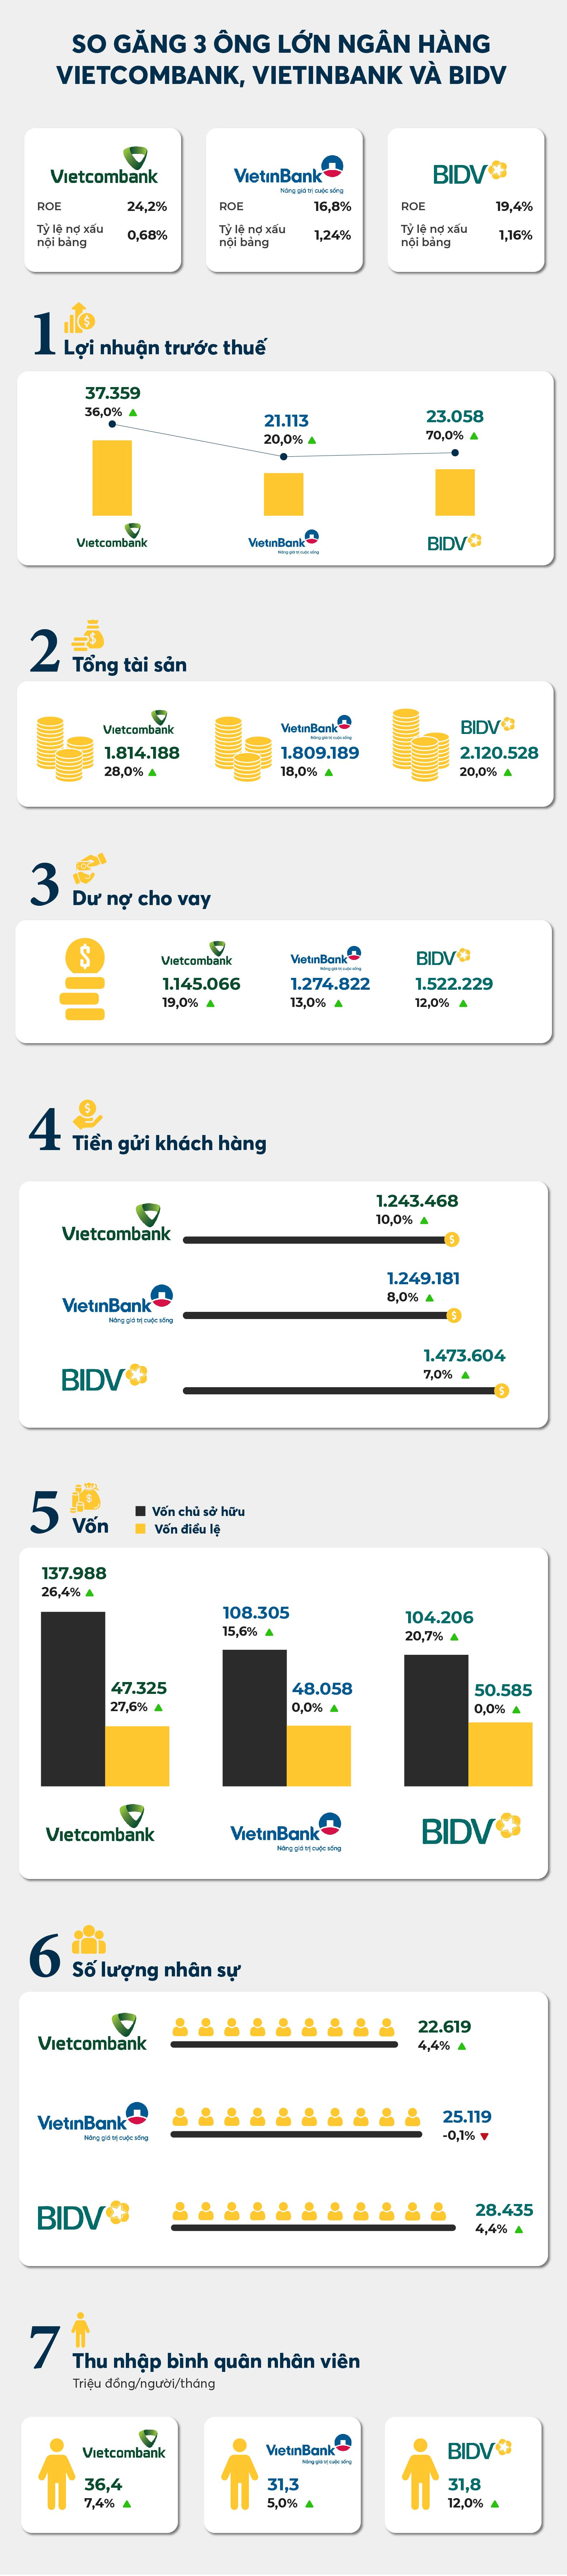 So găng Big3 ngân hàng: Vietcombank vượt trội về lợi nhuận, BIDV dẫn đầu quy mô, VietinBank là &quot;ông vua về nhì&quot; - Ảnh 2.